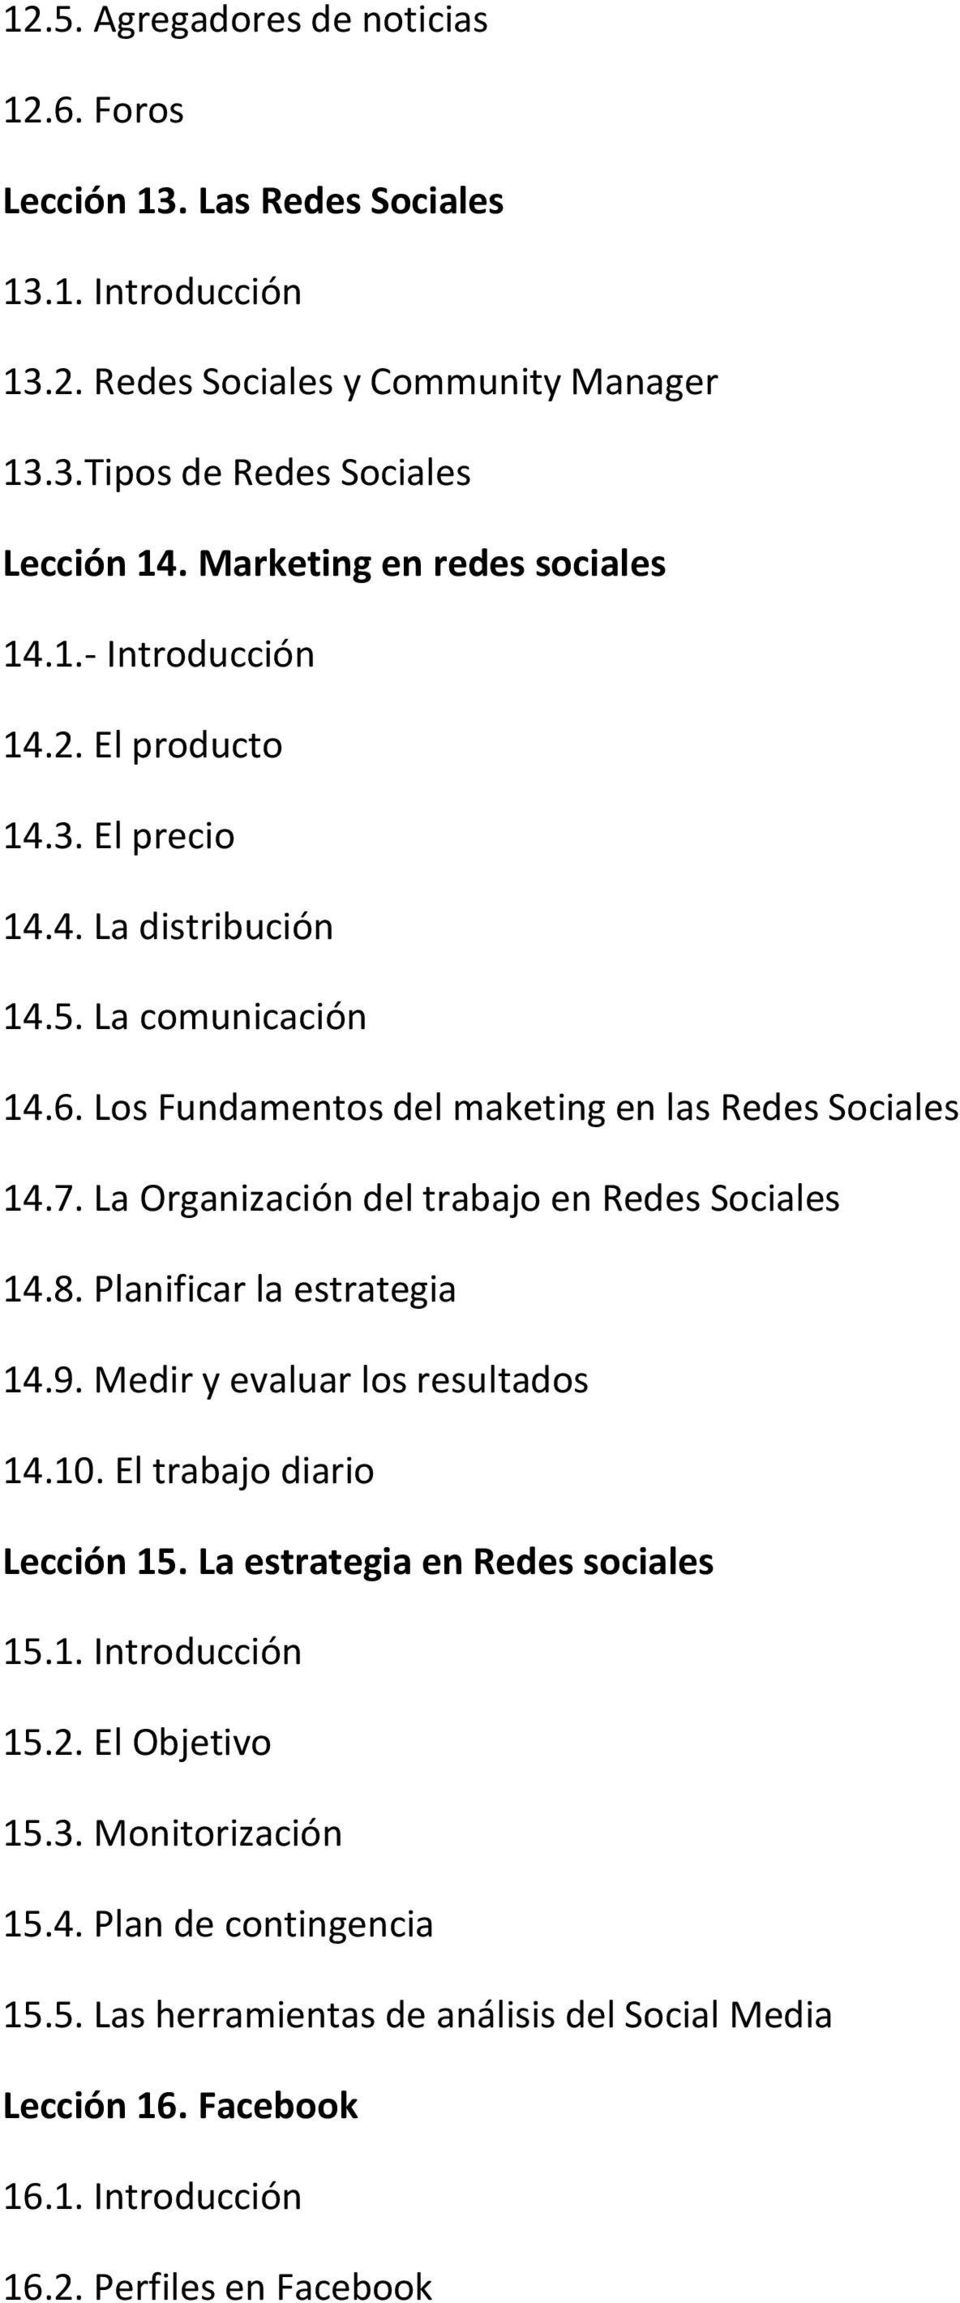 La Organización del trabajo en Redes Sociales 14.8. Planificar la estrategia 14.9. Medir y evaluar los resultados 14.10. El trabajo diario Lección 15. La estrategia en Redes sociales 15.1. Introducción 15.